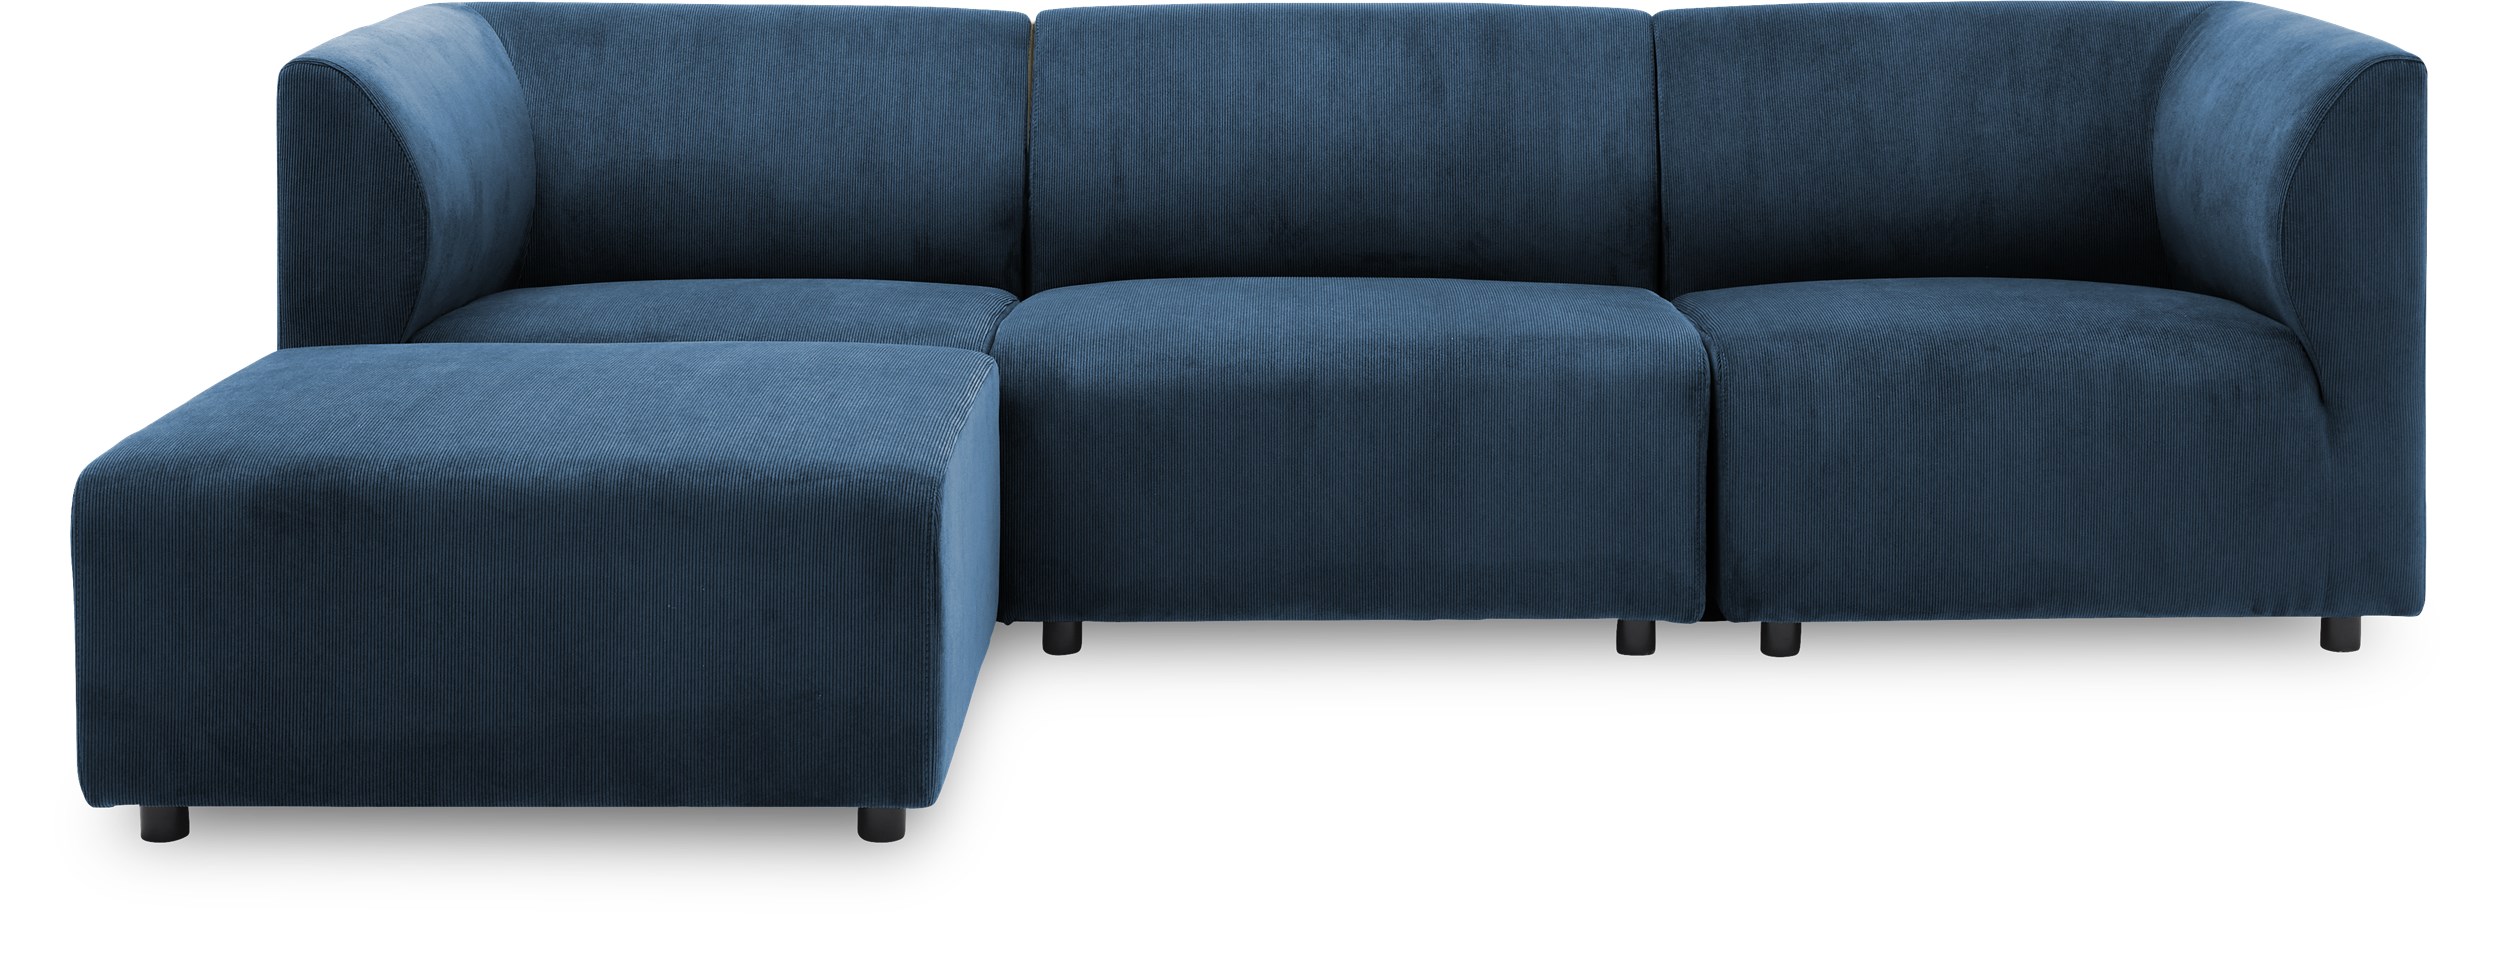 Divani Tresitsig med sittpuff Soffa - Wave 220 Royal blue textil och ben i svart plast